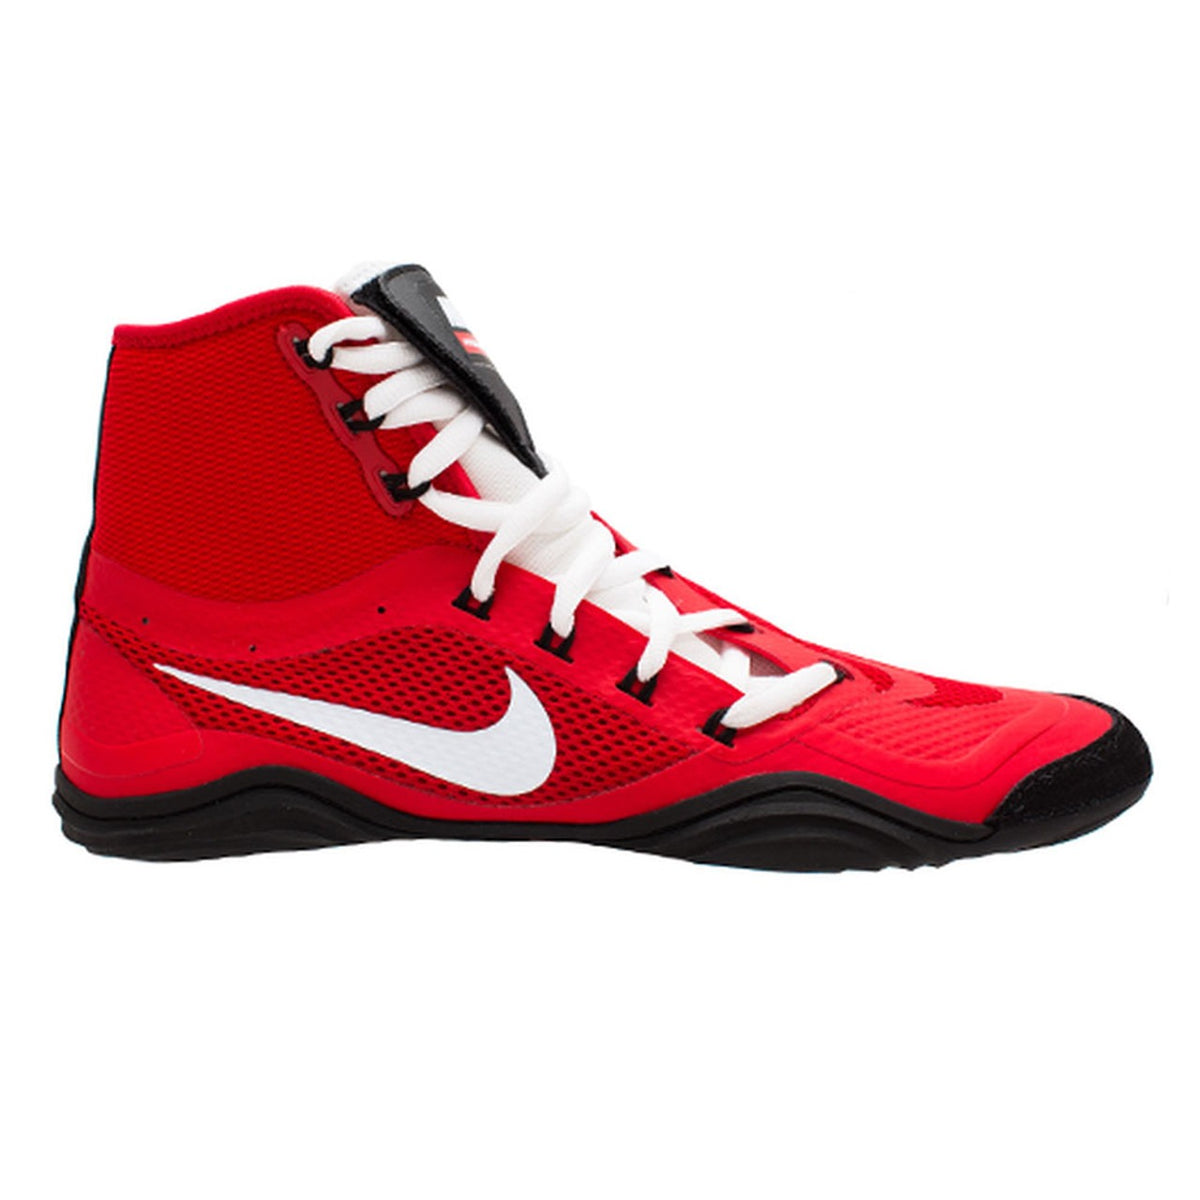 Nike patike za hrvanje HYPERSWEEP LE. Profesionalne hrvačke cipele za sve ambiciozne hrvače. Uz najnapredniju tehnologiju, Nike Hypersweep vam pruža dobro prianjanje na hrvačkoj strunjači. Na treninzima i takmičenjima. Ovdje u crvenoj boji.